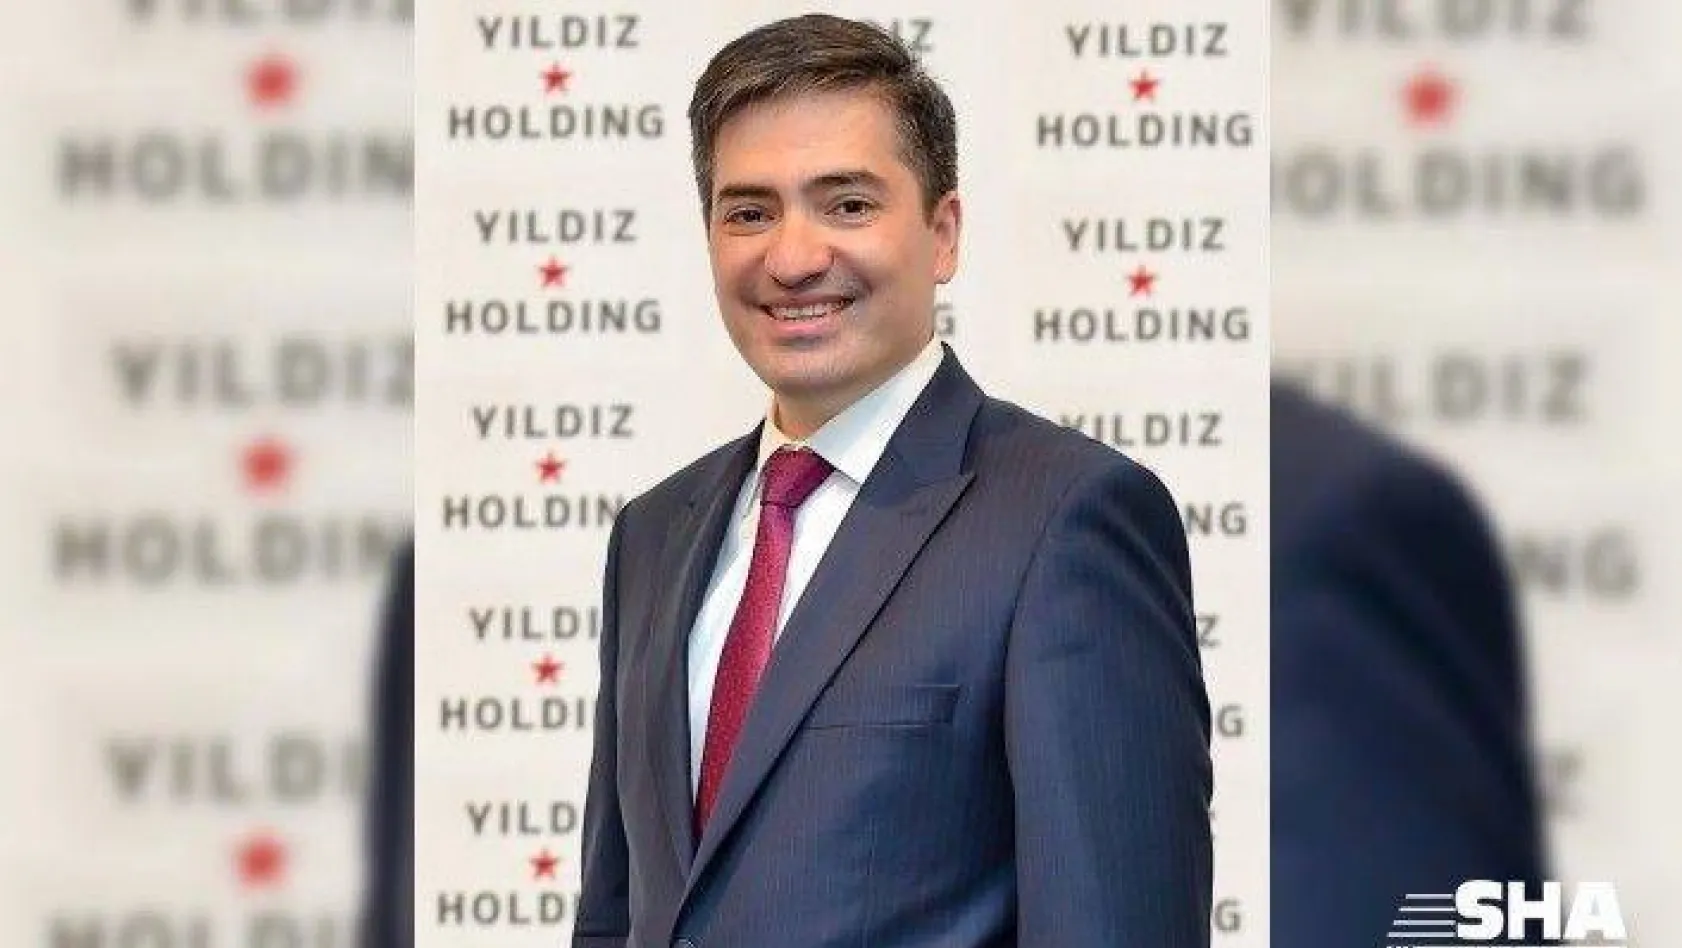 Yıldız Holding'in 65 milyar TL cirosu Fahrettin Ertik'e emanet